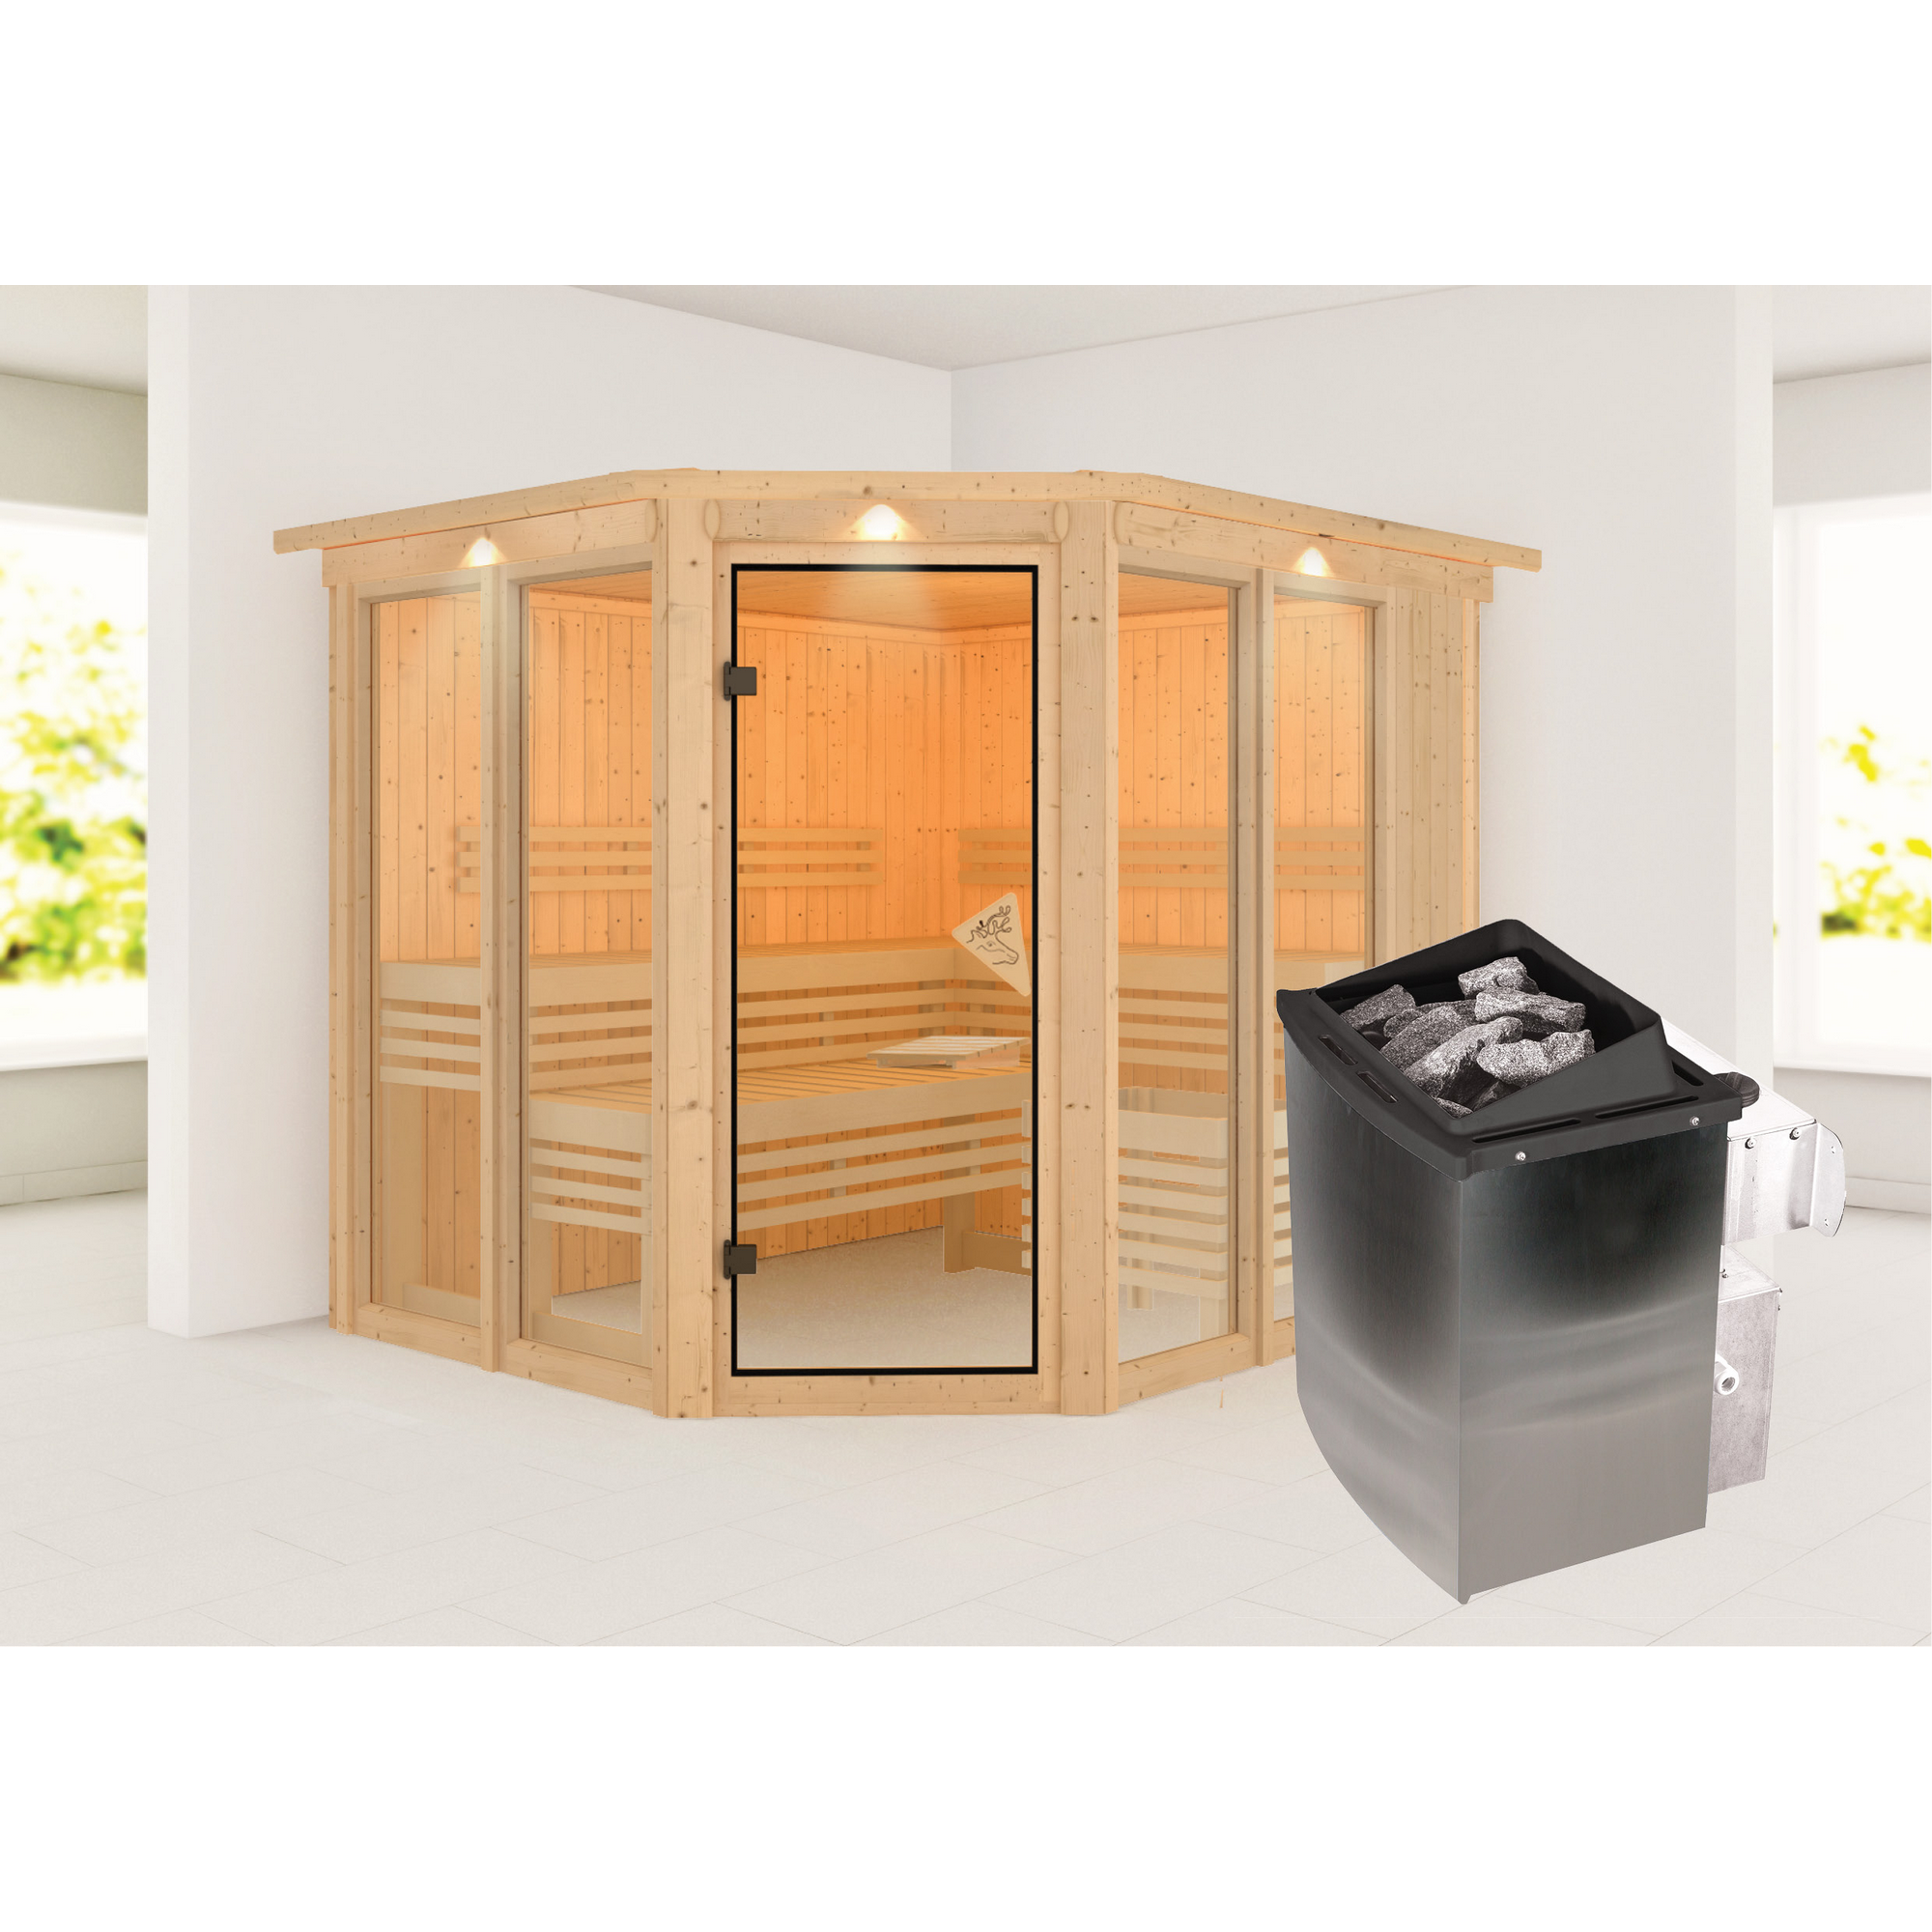 Sauna 'Ariadna 3' naturbelassen mit Kranz und bronzierter Tür 9 kW Ofen integrierte Steuerung 245 x 210 x 202 cm + product picture